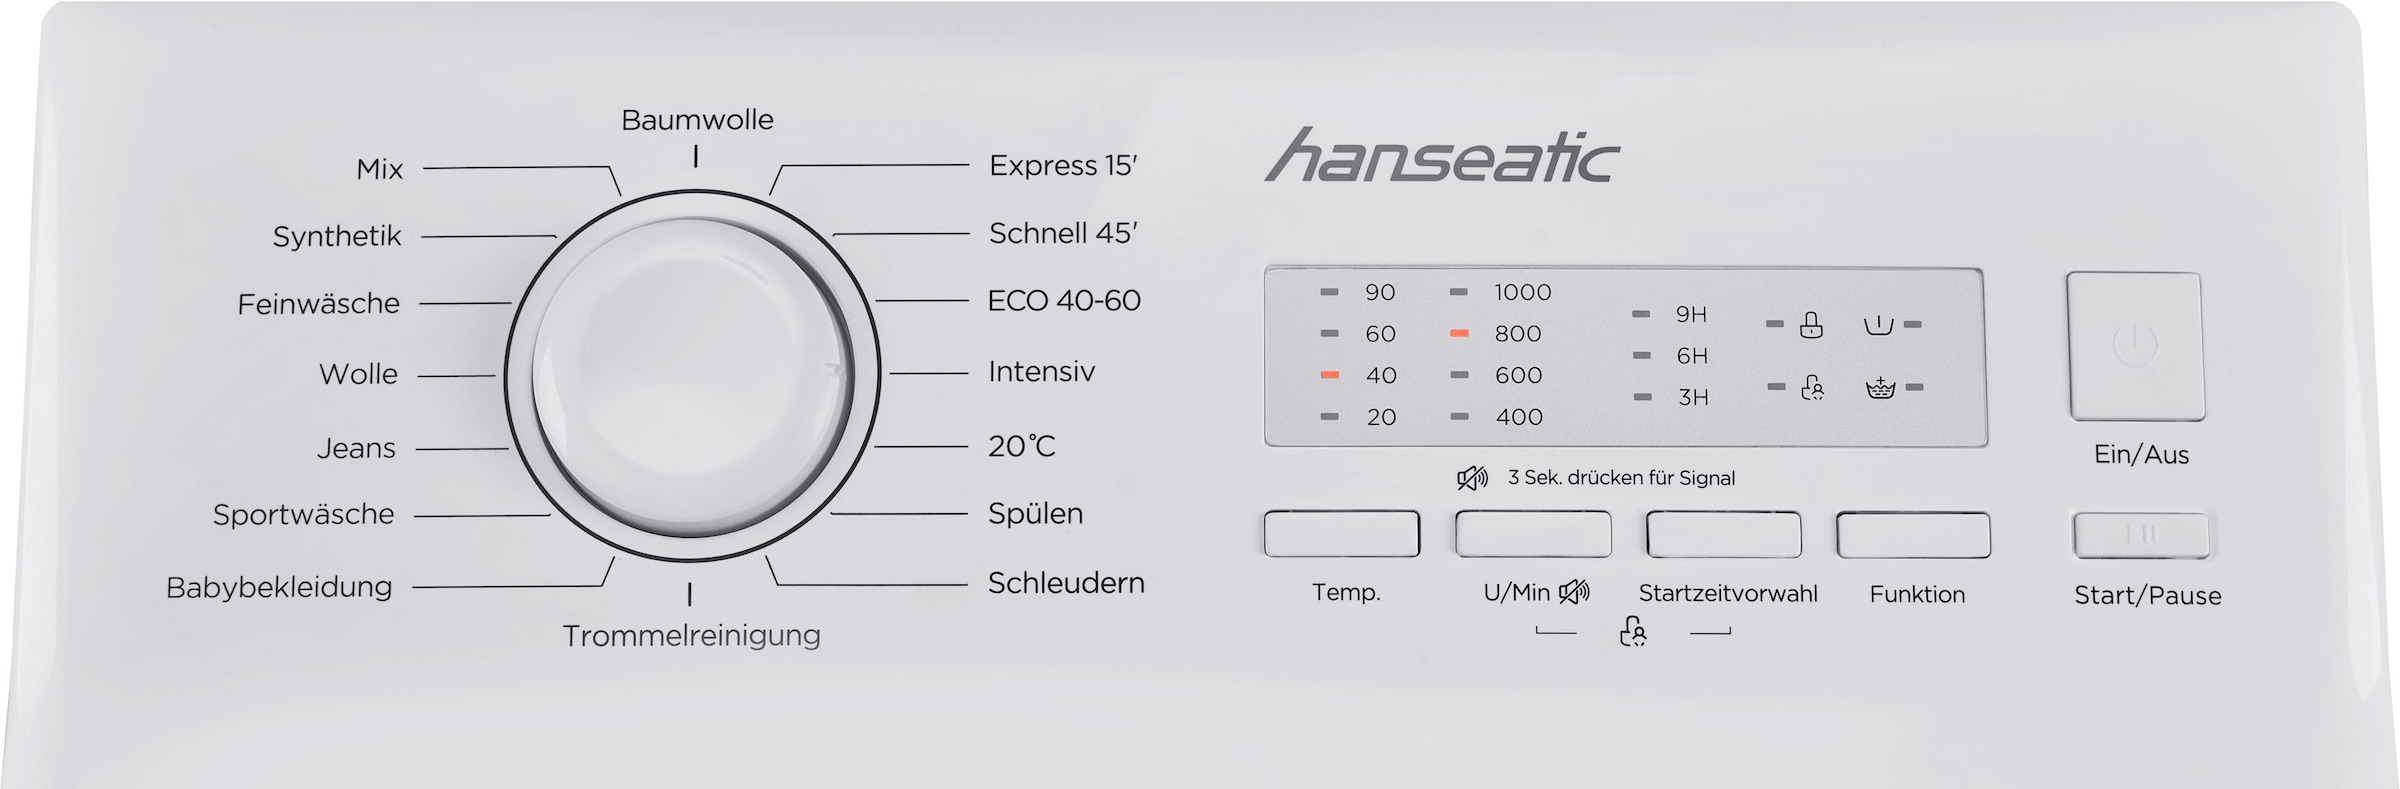 Hanseatic Waschmaschine Toplader, HTW610D, Überlaufschutzsystem 1000 kg, kaufen Mengenautomatik, 6 U/min